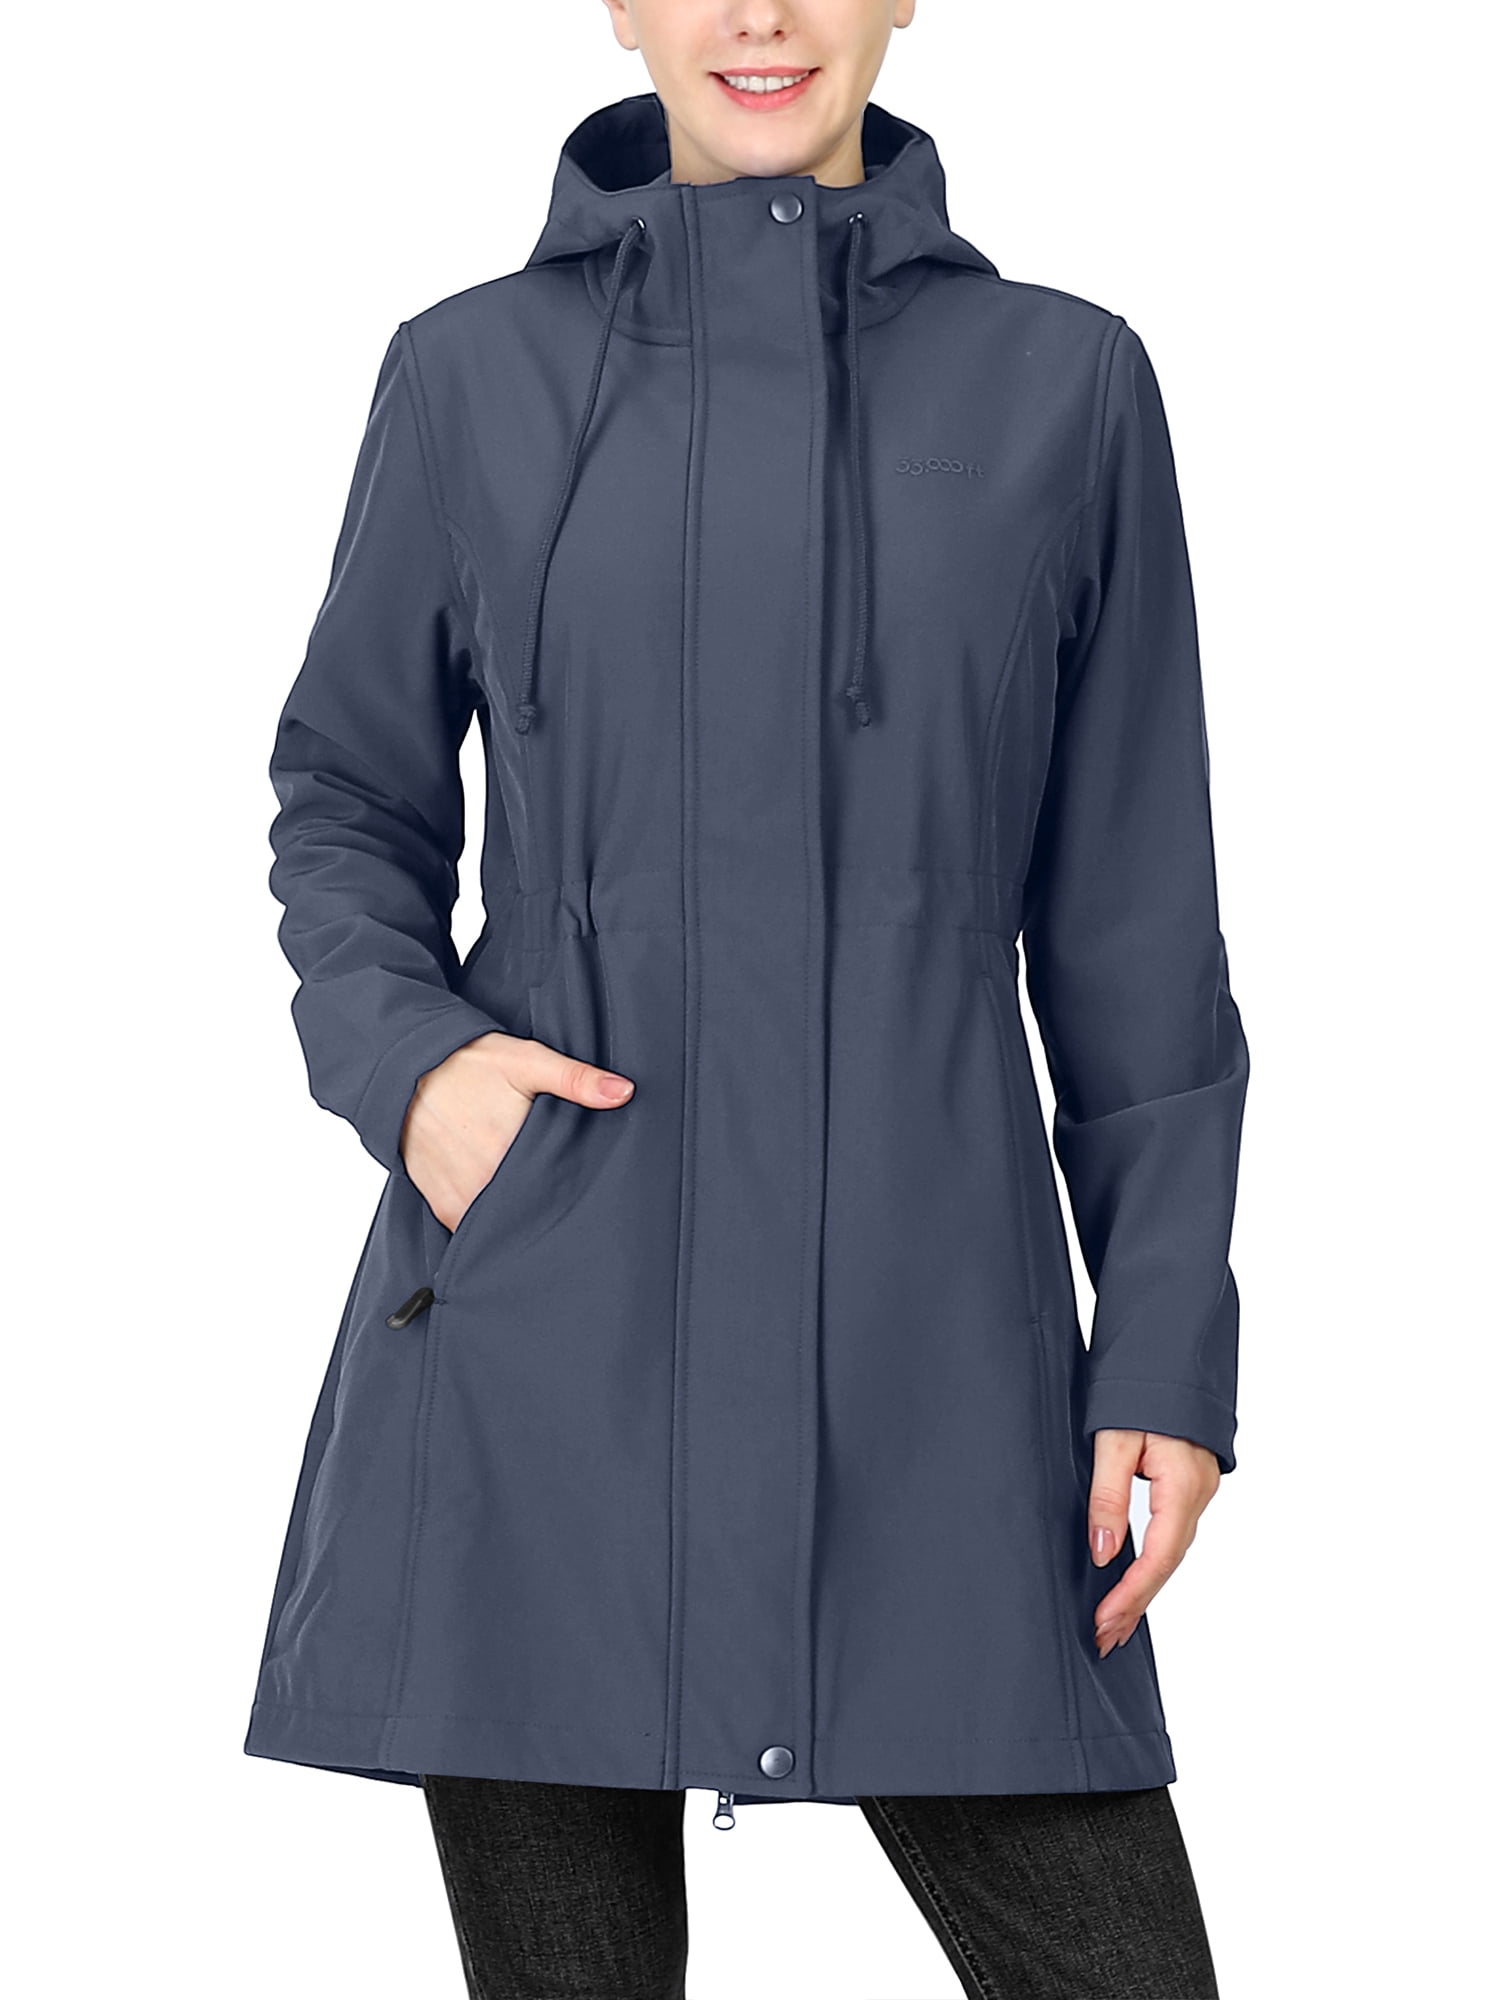 33,000ft Women\'s Softshell Long Jacket with Hood Fleece Lined Windproof  Warm up Waterproof Windbreaker